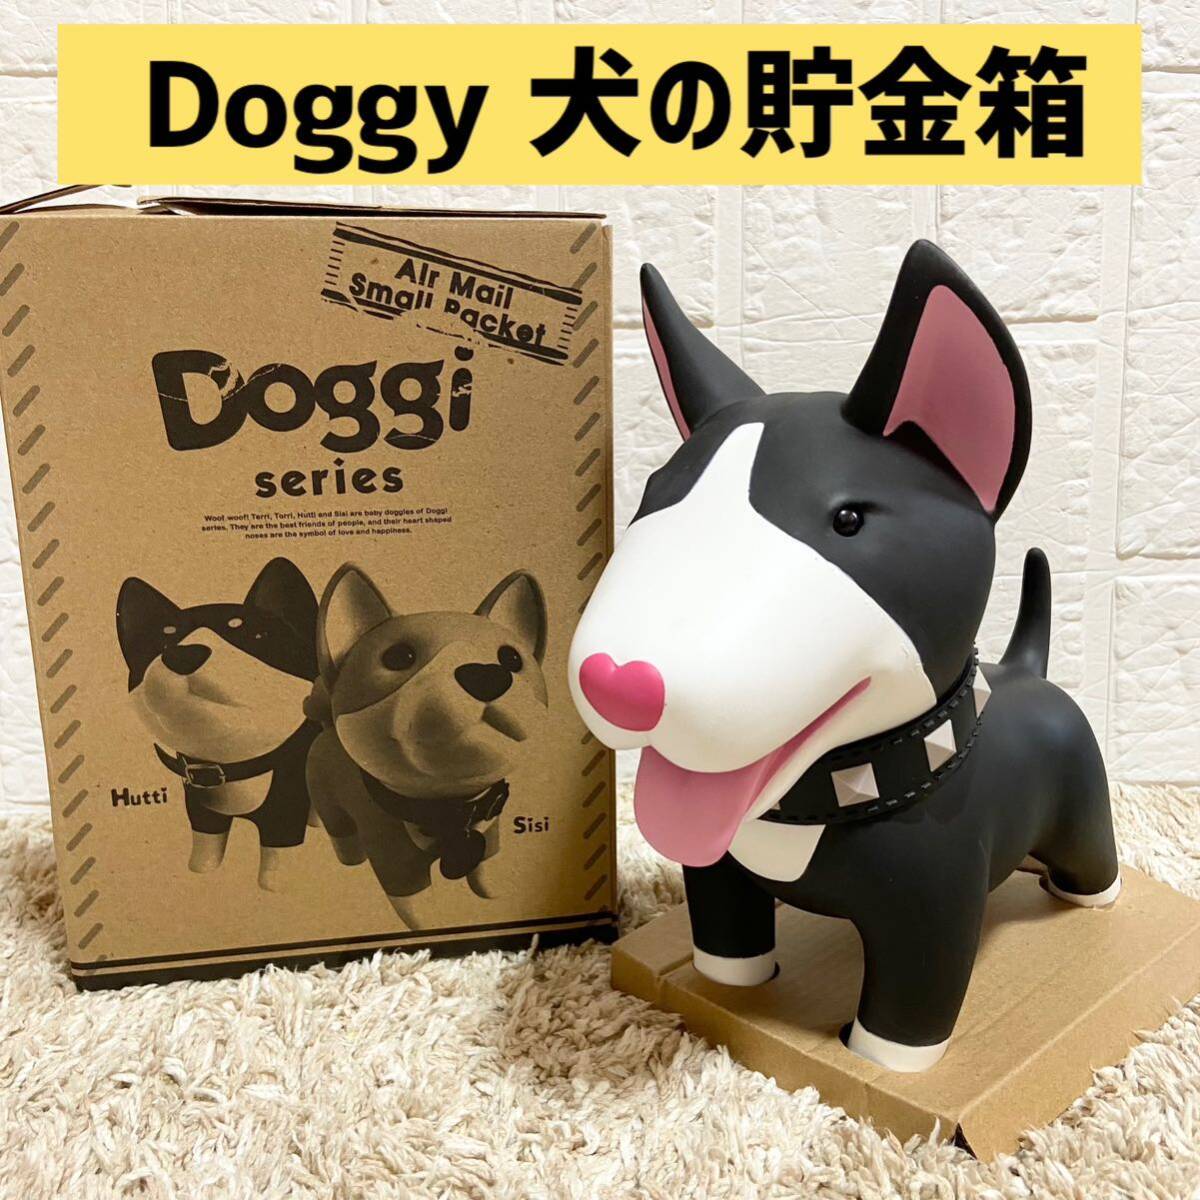 ー大特価ー Doggy 貯金箱 犬 PVCかわいい 癒し インテリア 置物 プレゼント (黒いの子犬) の画像1